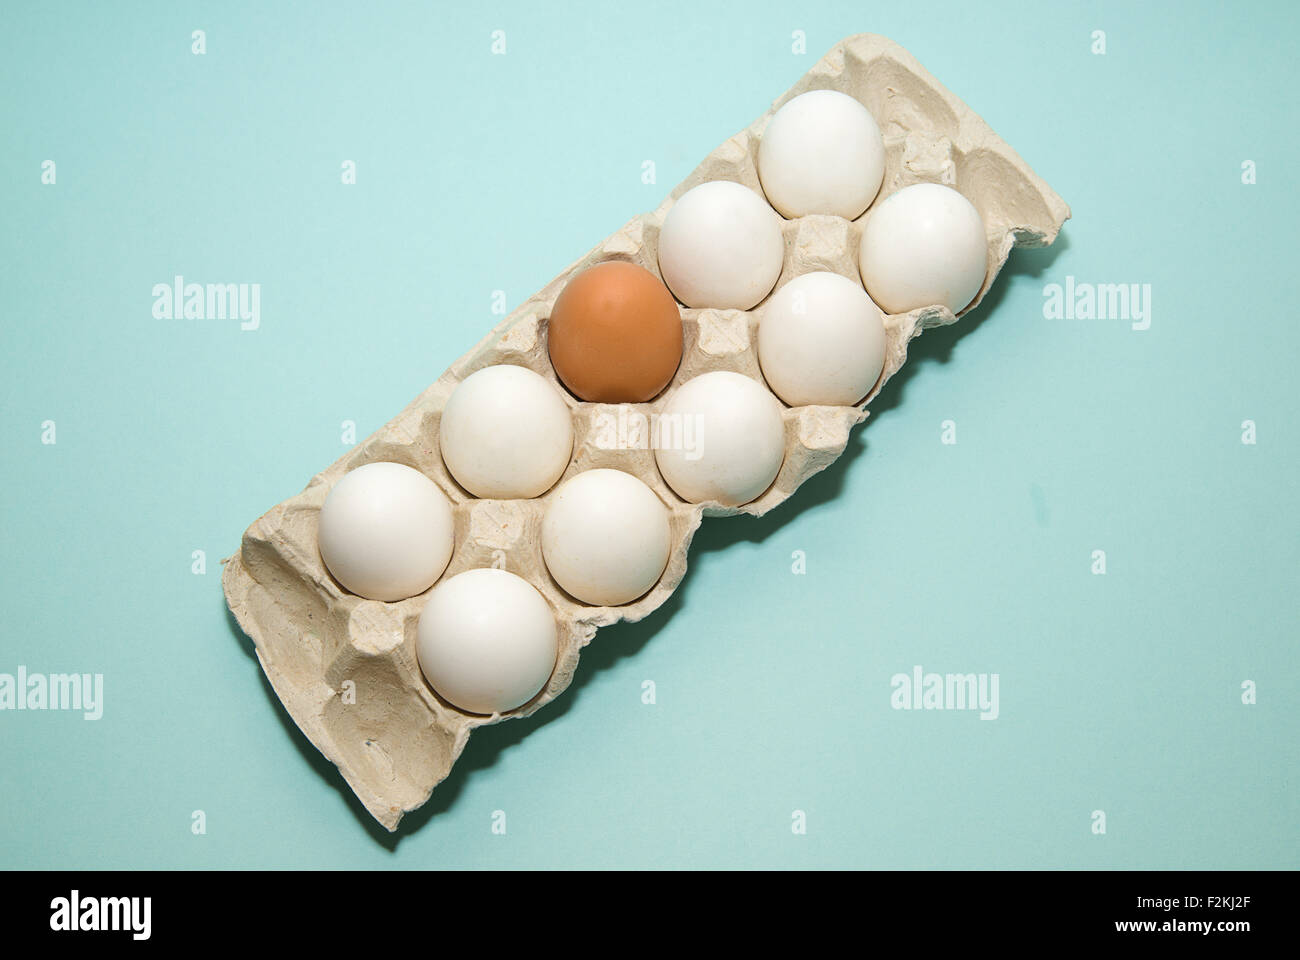 Uova di gallina di diversi colori nella confezione Foto Stock